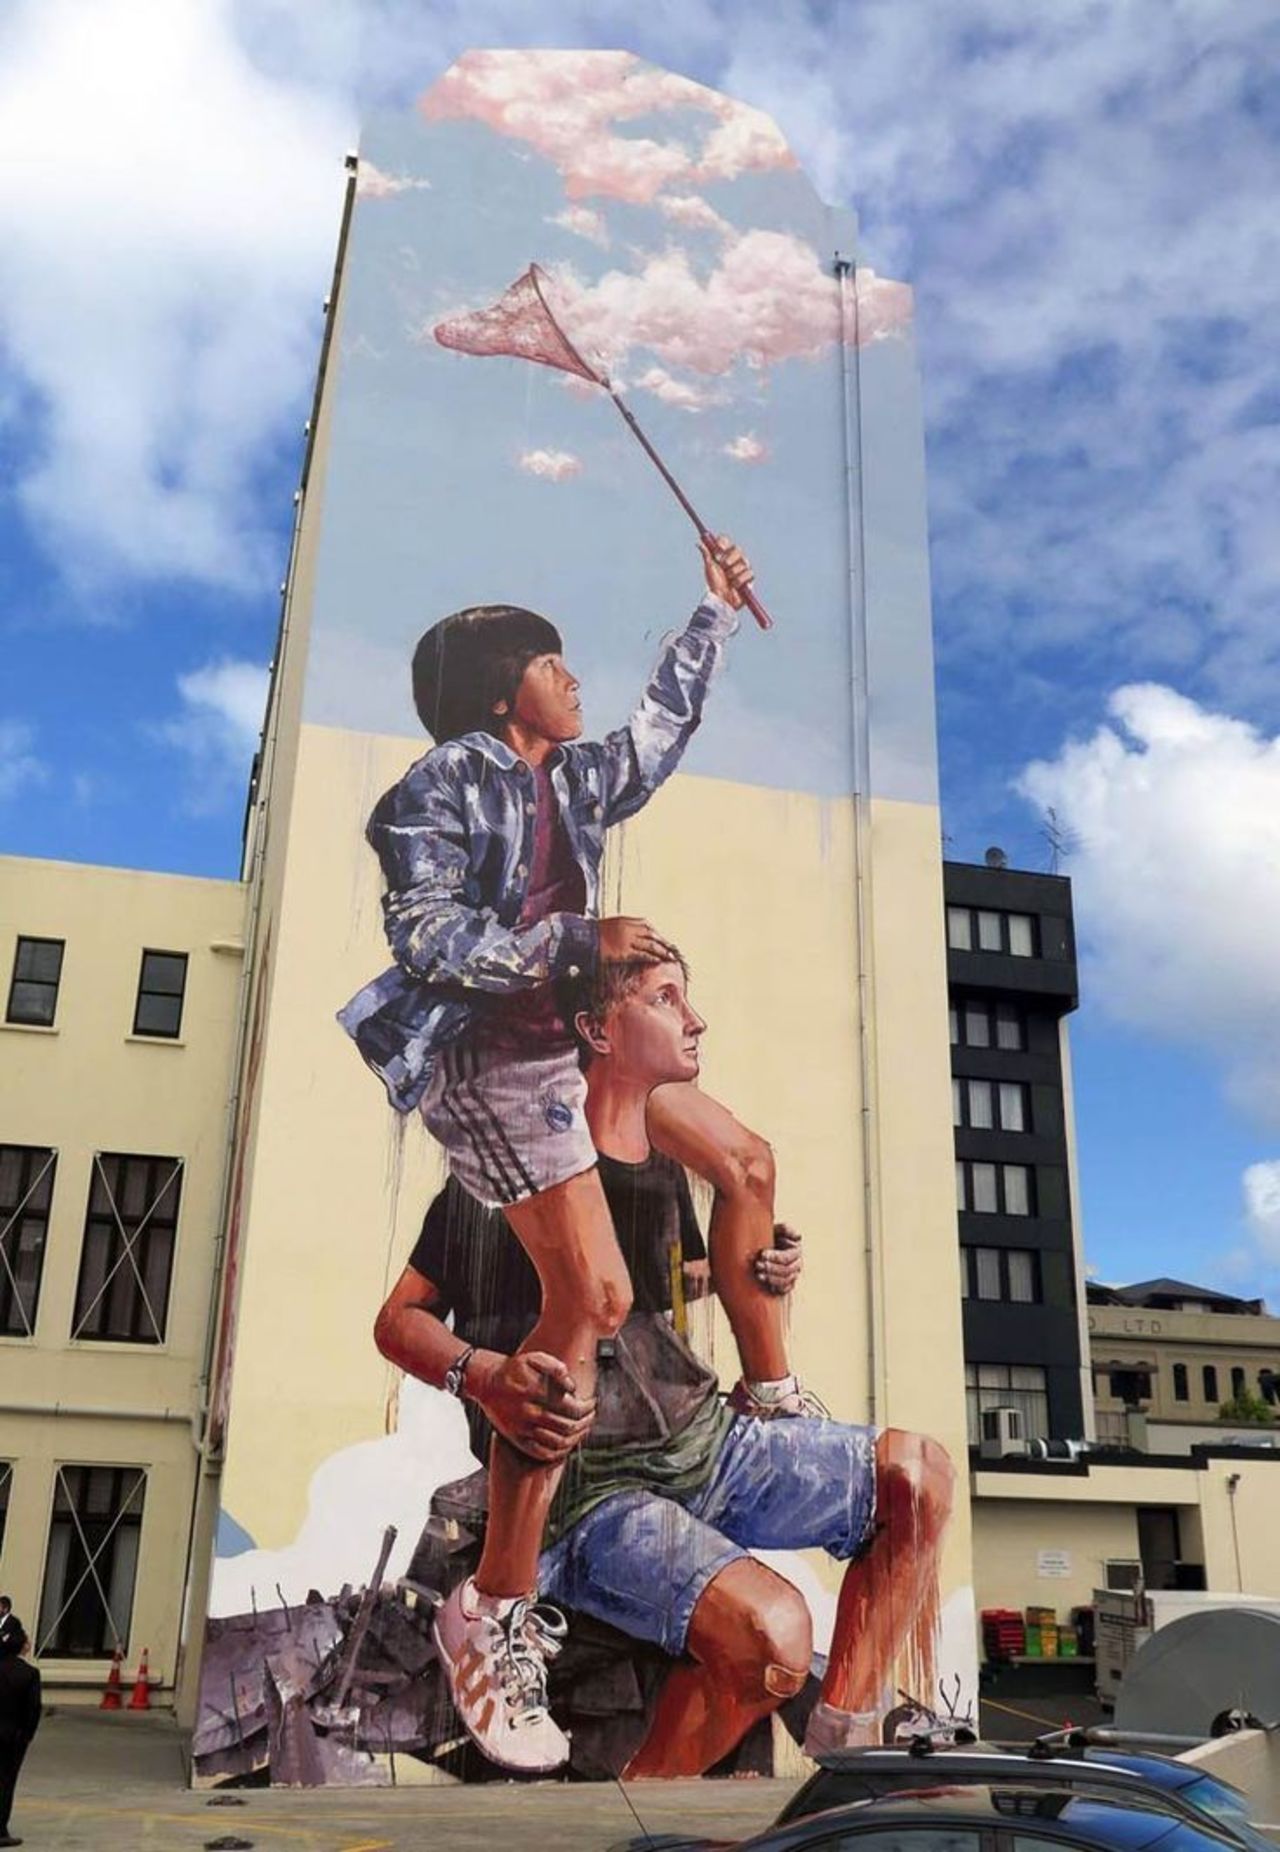 Fintan Magee#streetart #mural #graffiti #art https://t.co/g2NOIpJJQ2